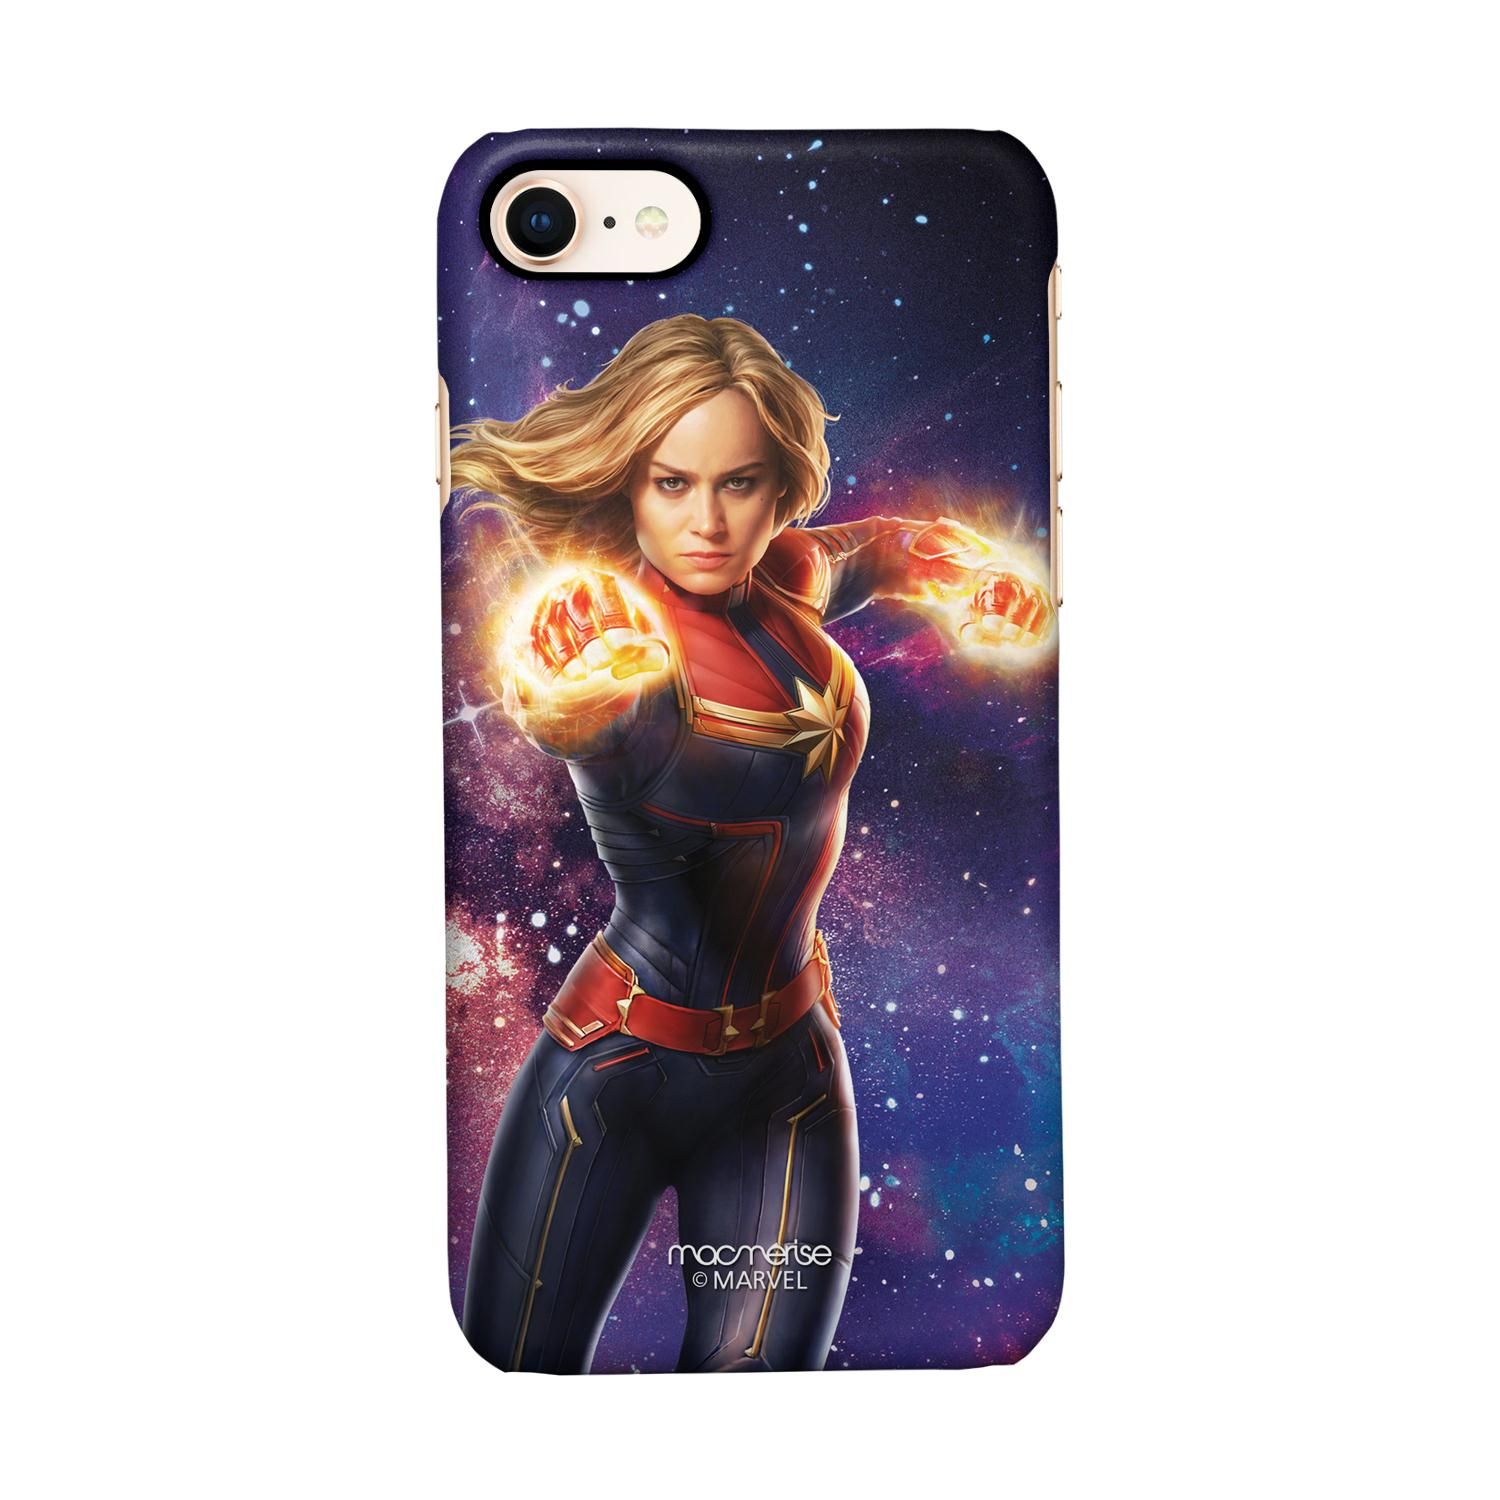 Buy Fierce Captain Marvel - Sleek Phone Case for iPhone 7 Online